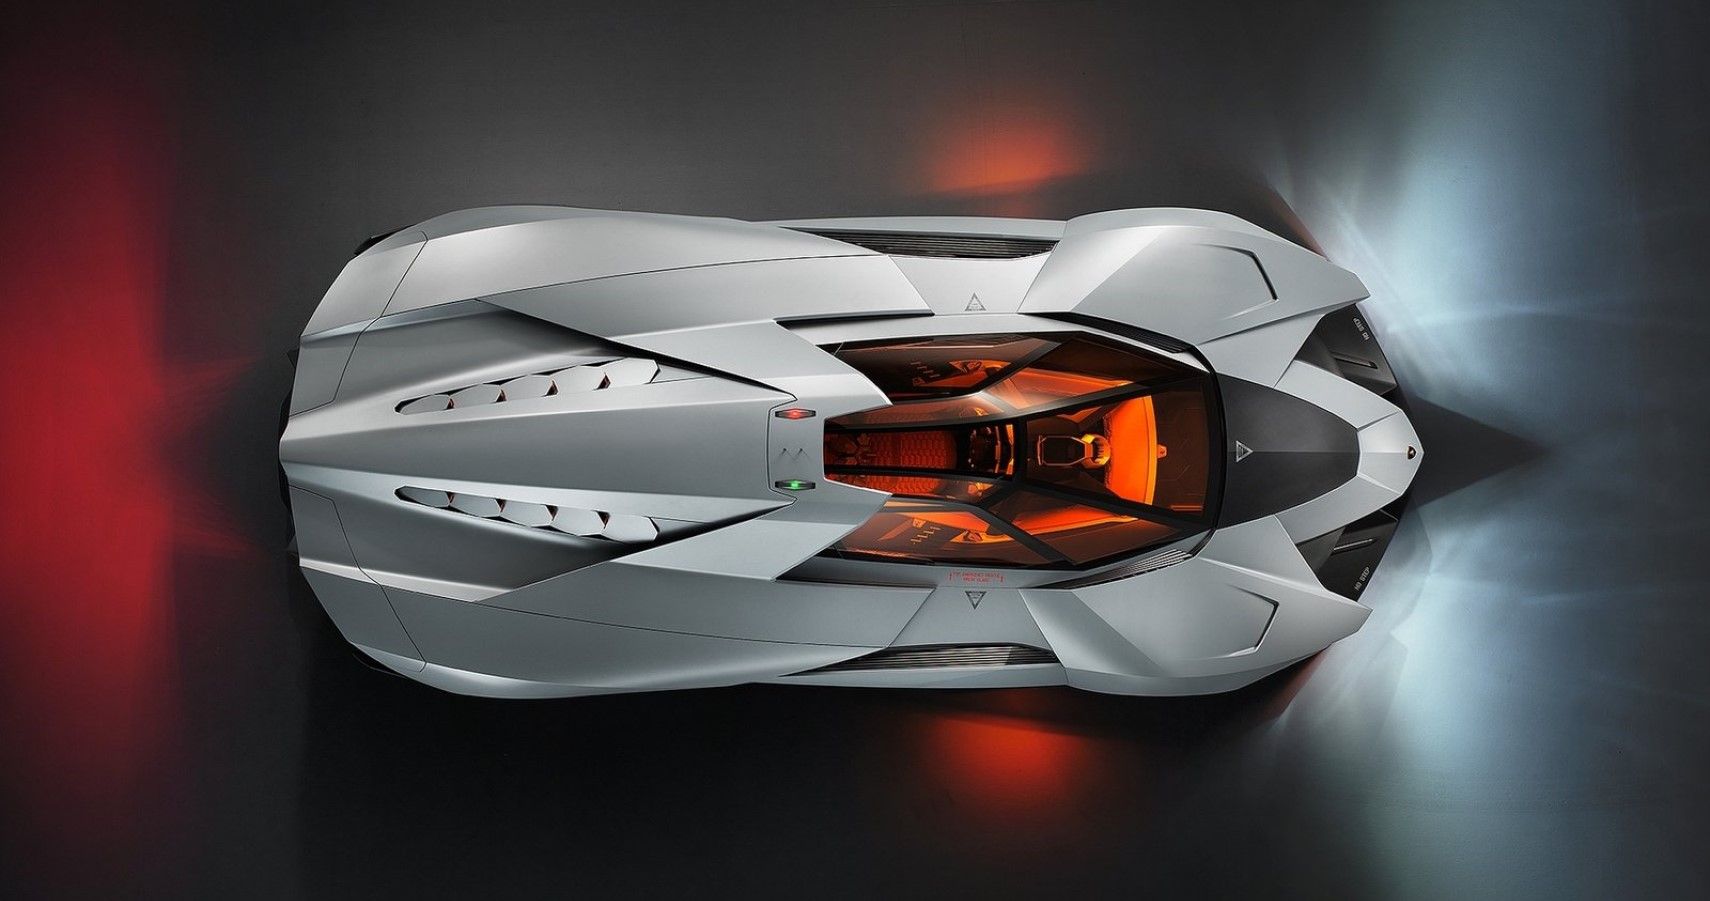 Lamborghini Egoista Concept hd wallpaper view